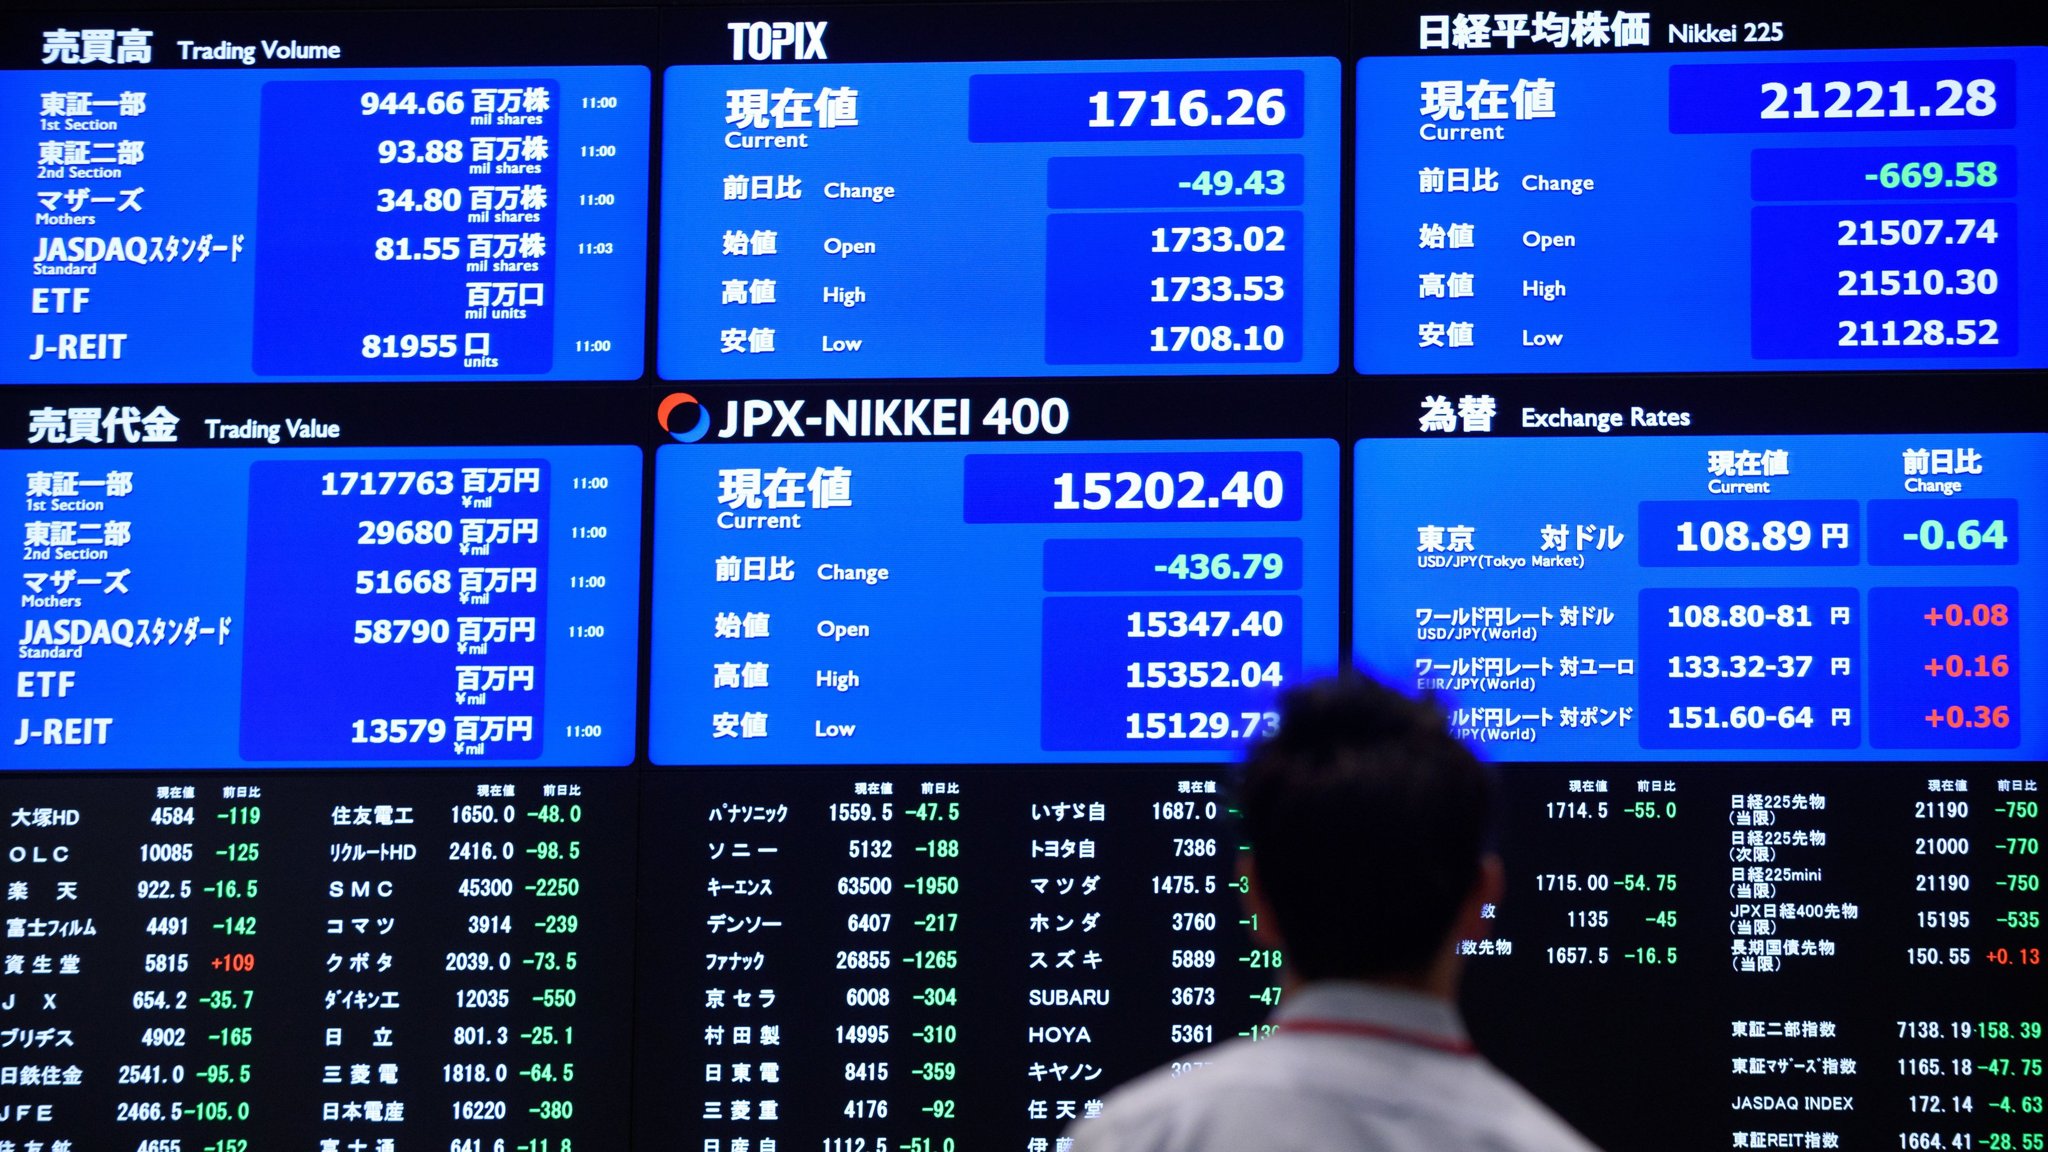 Nhật Bản - viên ngọc sáng giữa các thị trường phát triển